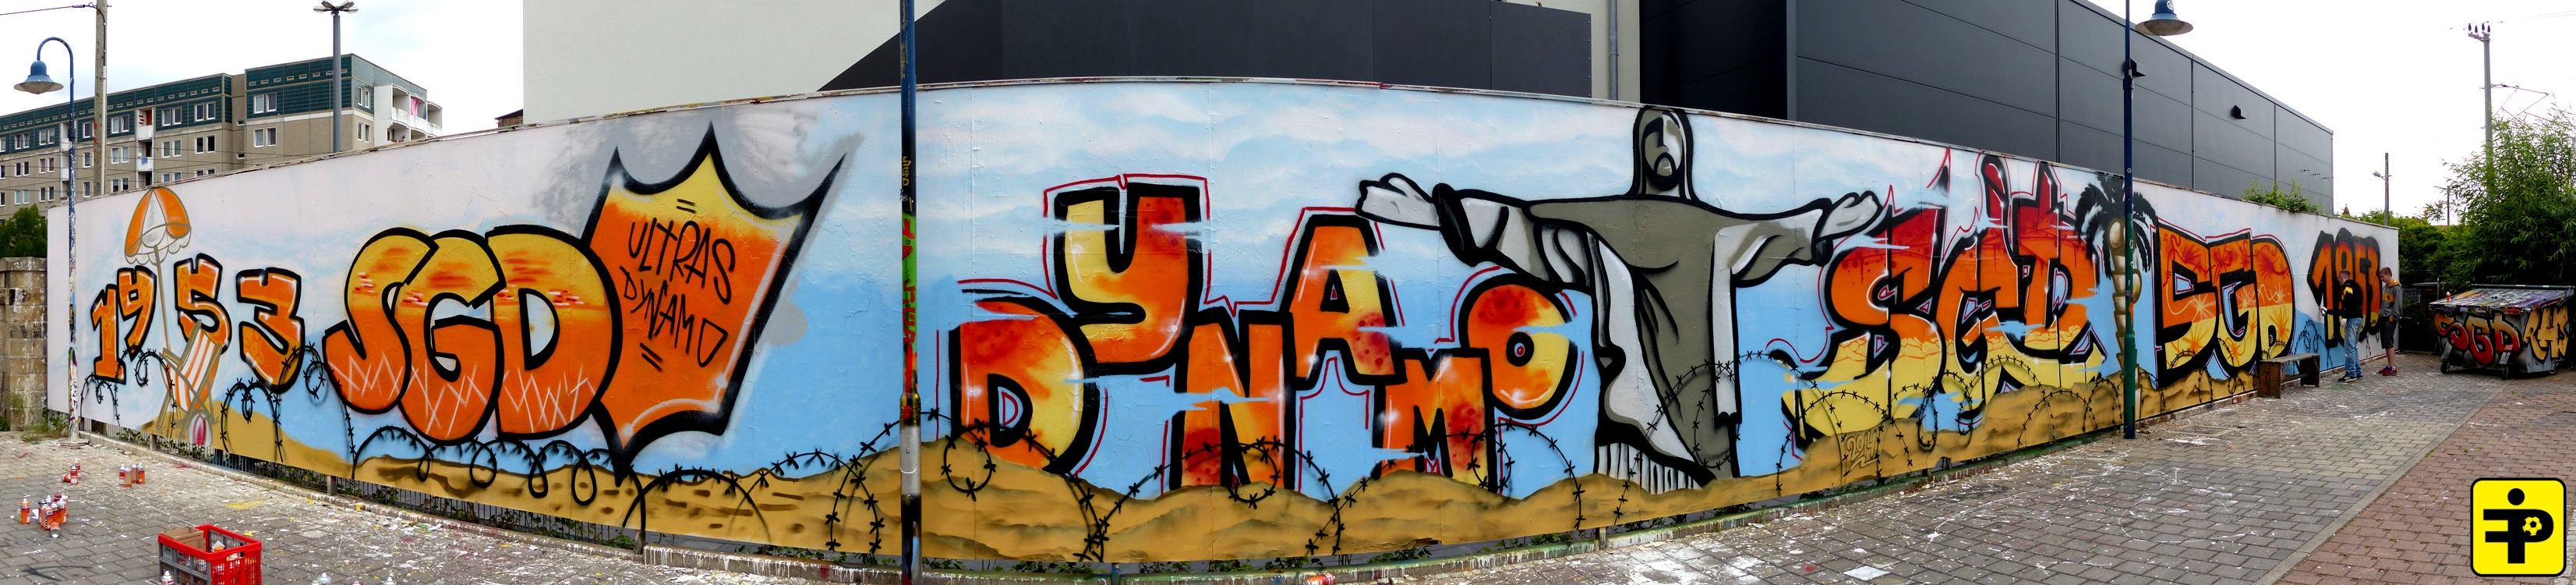 Graffiti-WM-Wand